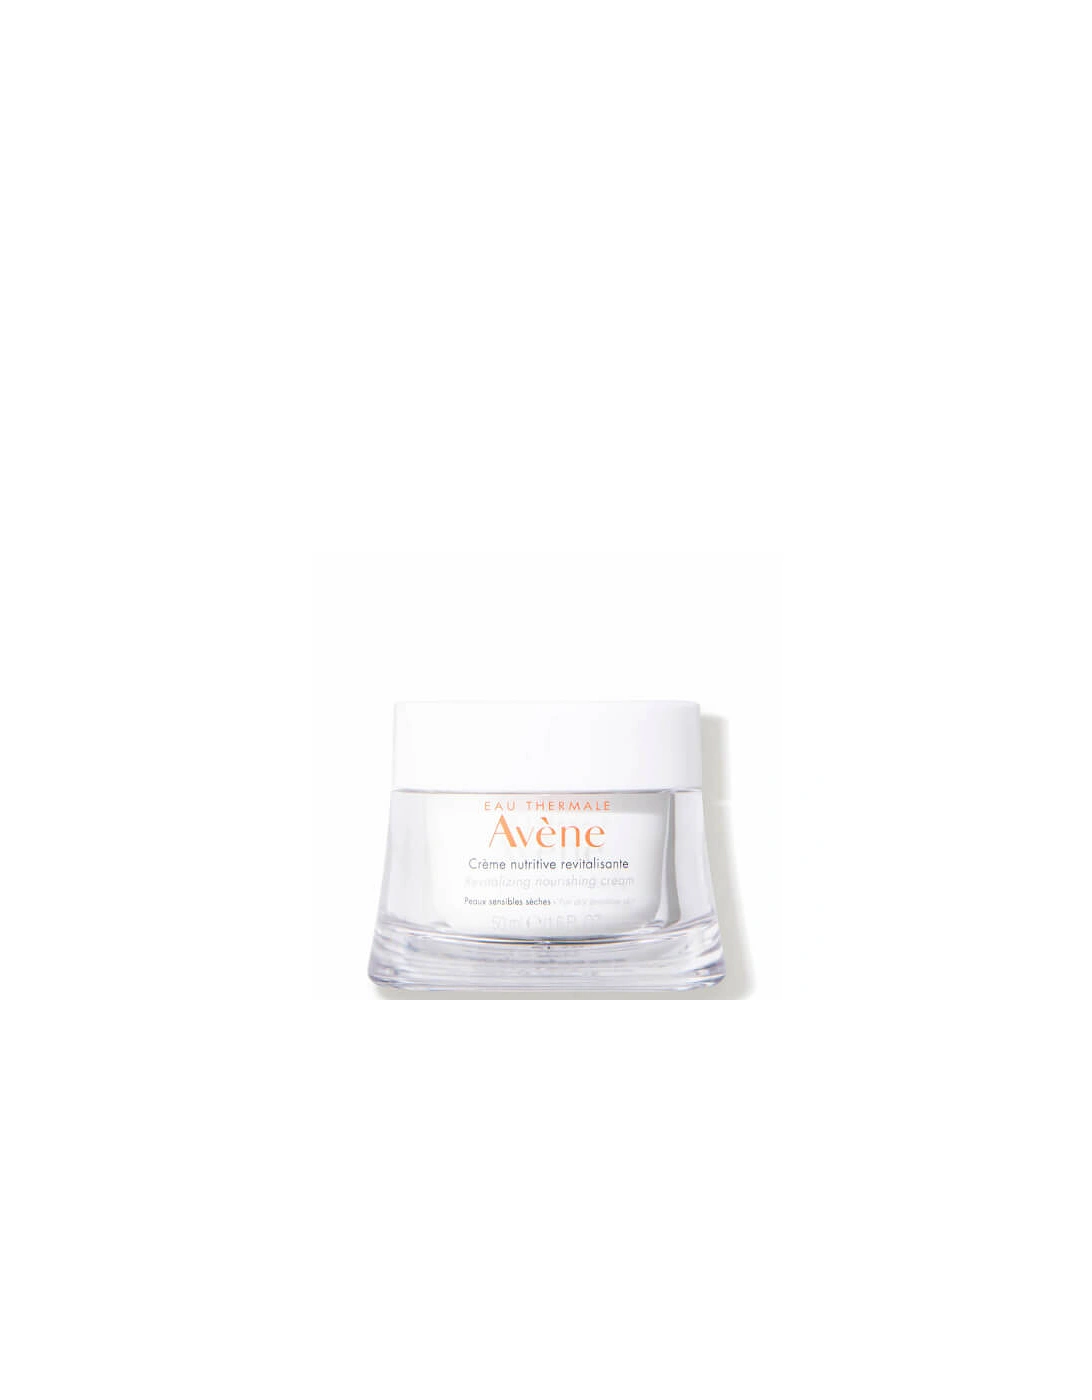 Avène Les Essentiels Revitalizing Nourishing Cream Moisturiser for Dry, Sensitive Skin 50ml, 2 of 1